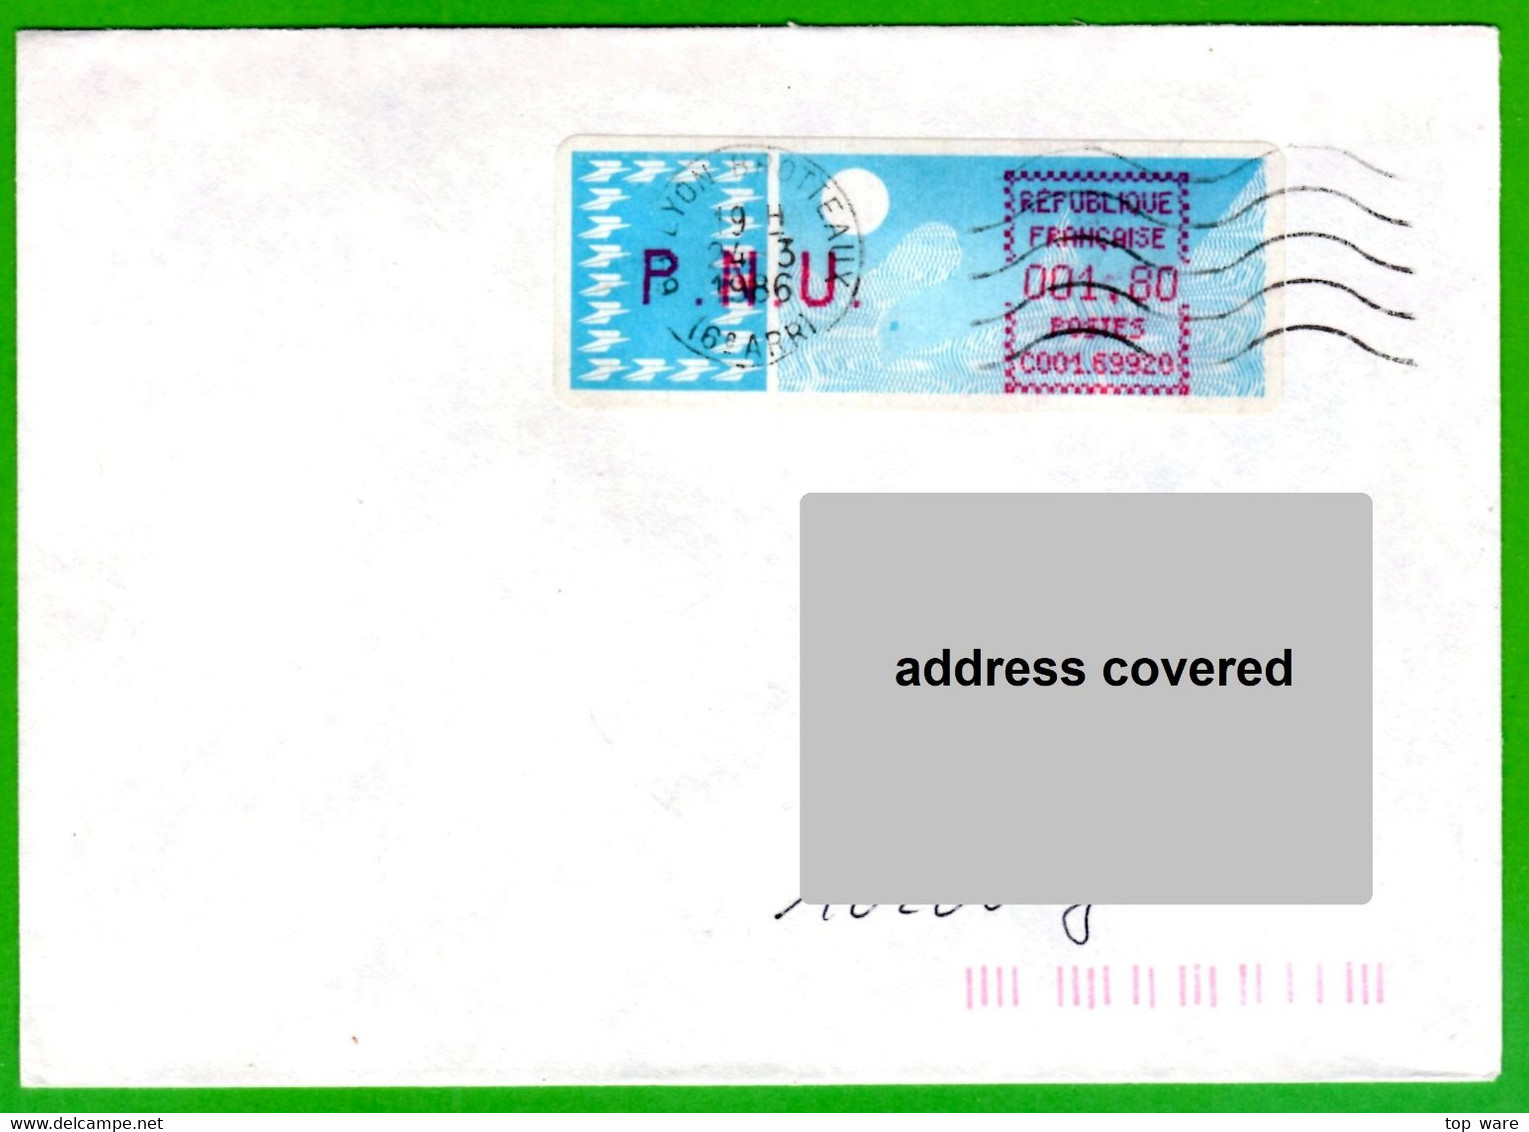 France LSA ATM Stamps C001.69920 / Michel 6.6 Zd / PNU 1,80 On Cover 24.3.86 Lyon Brotteaux / Distributeurs - 1985 Papel « Carrier »